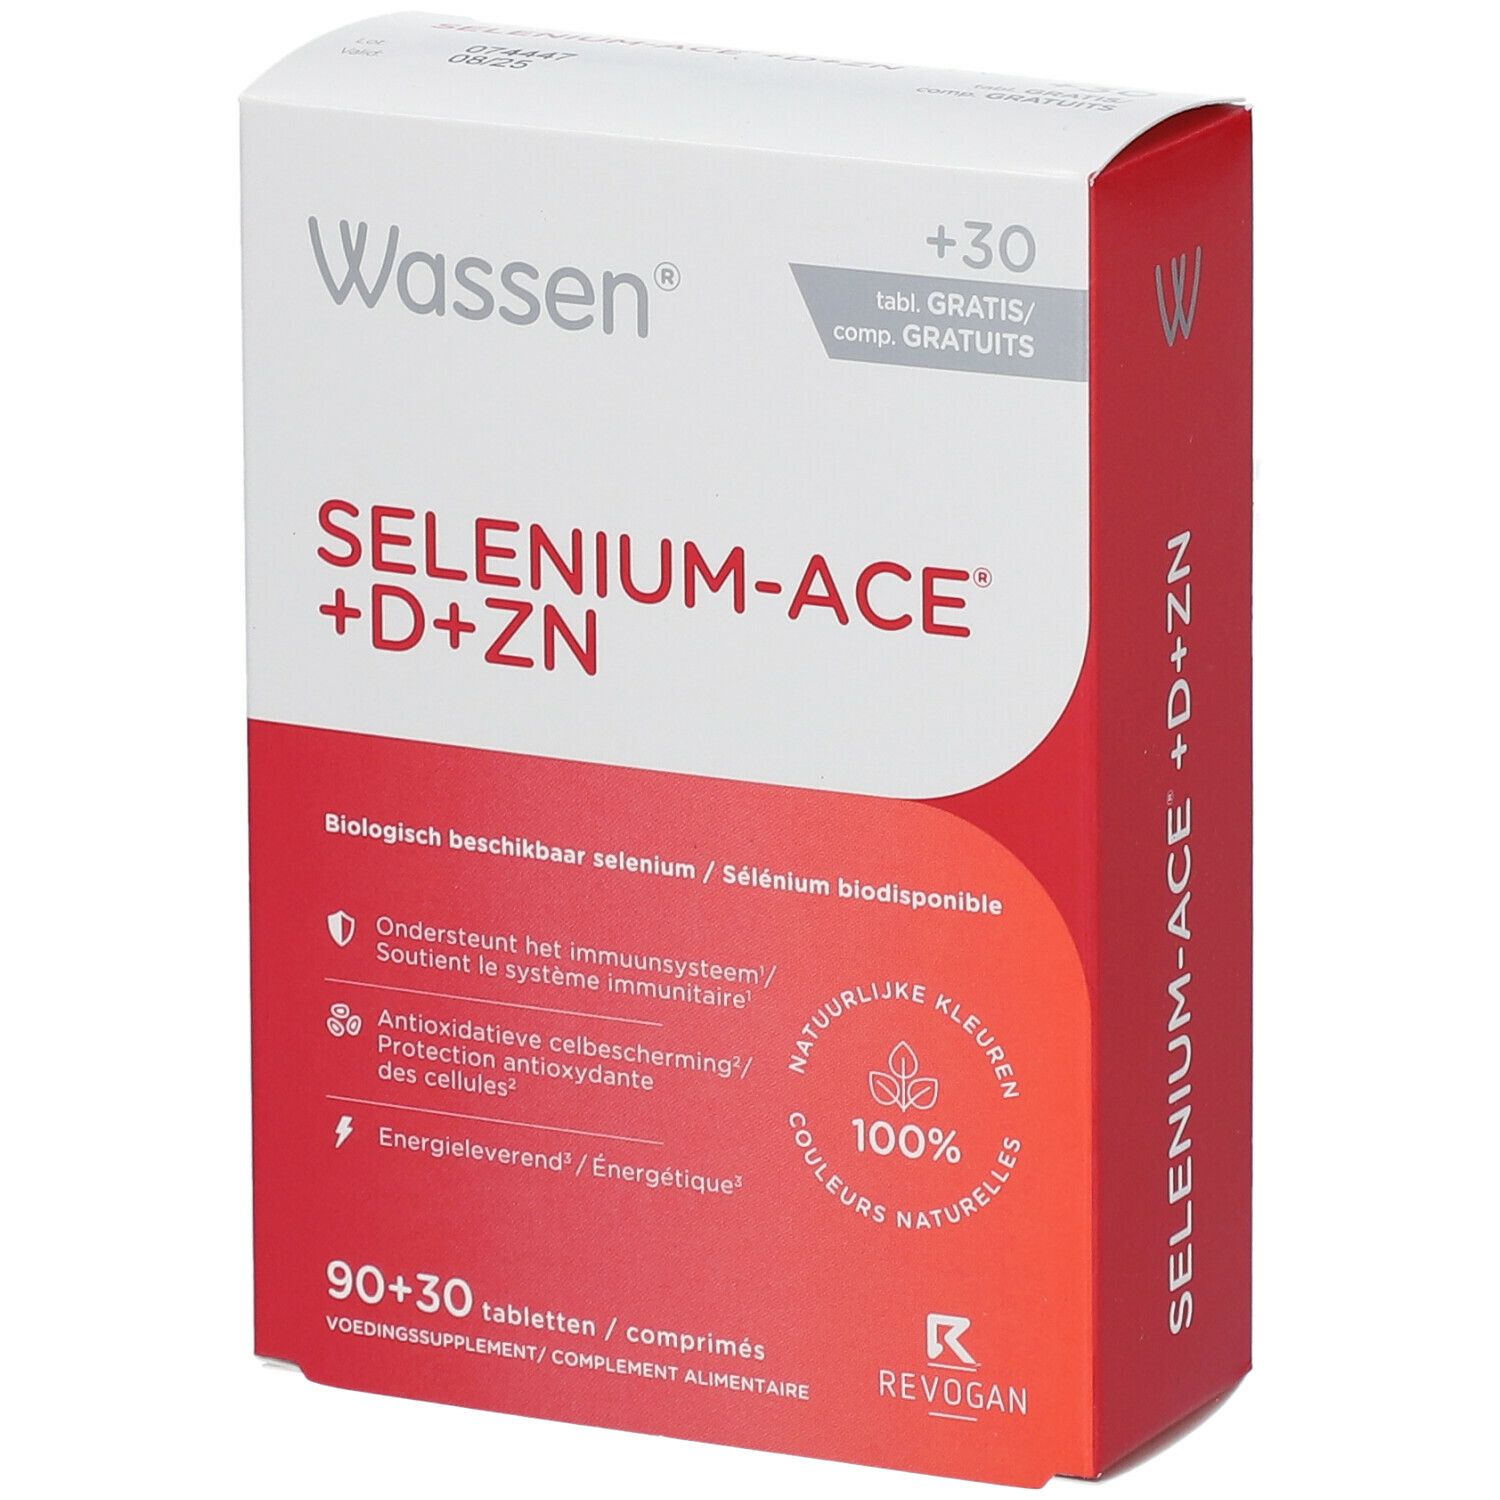 Wassen® Selenium-ACE+D+Zn